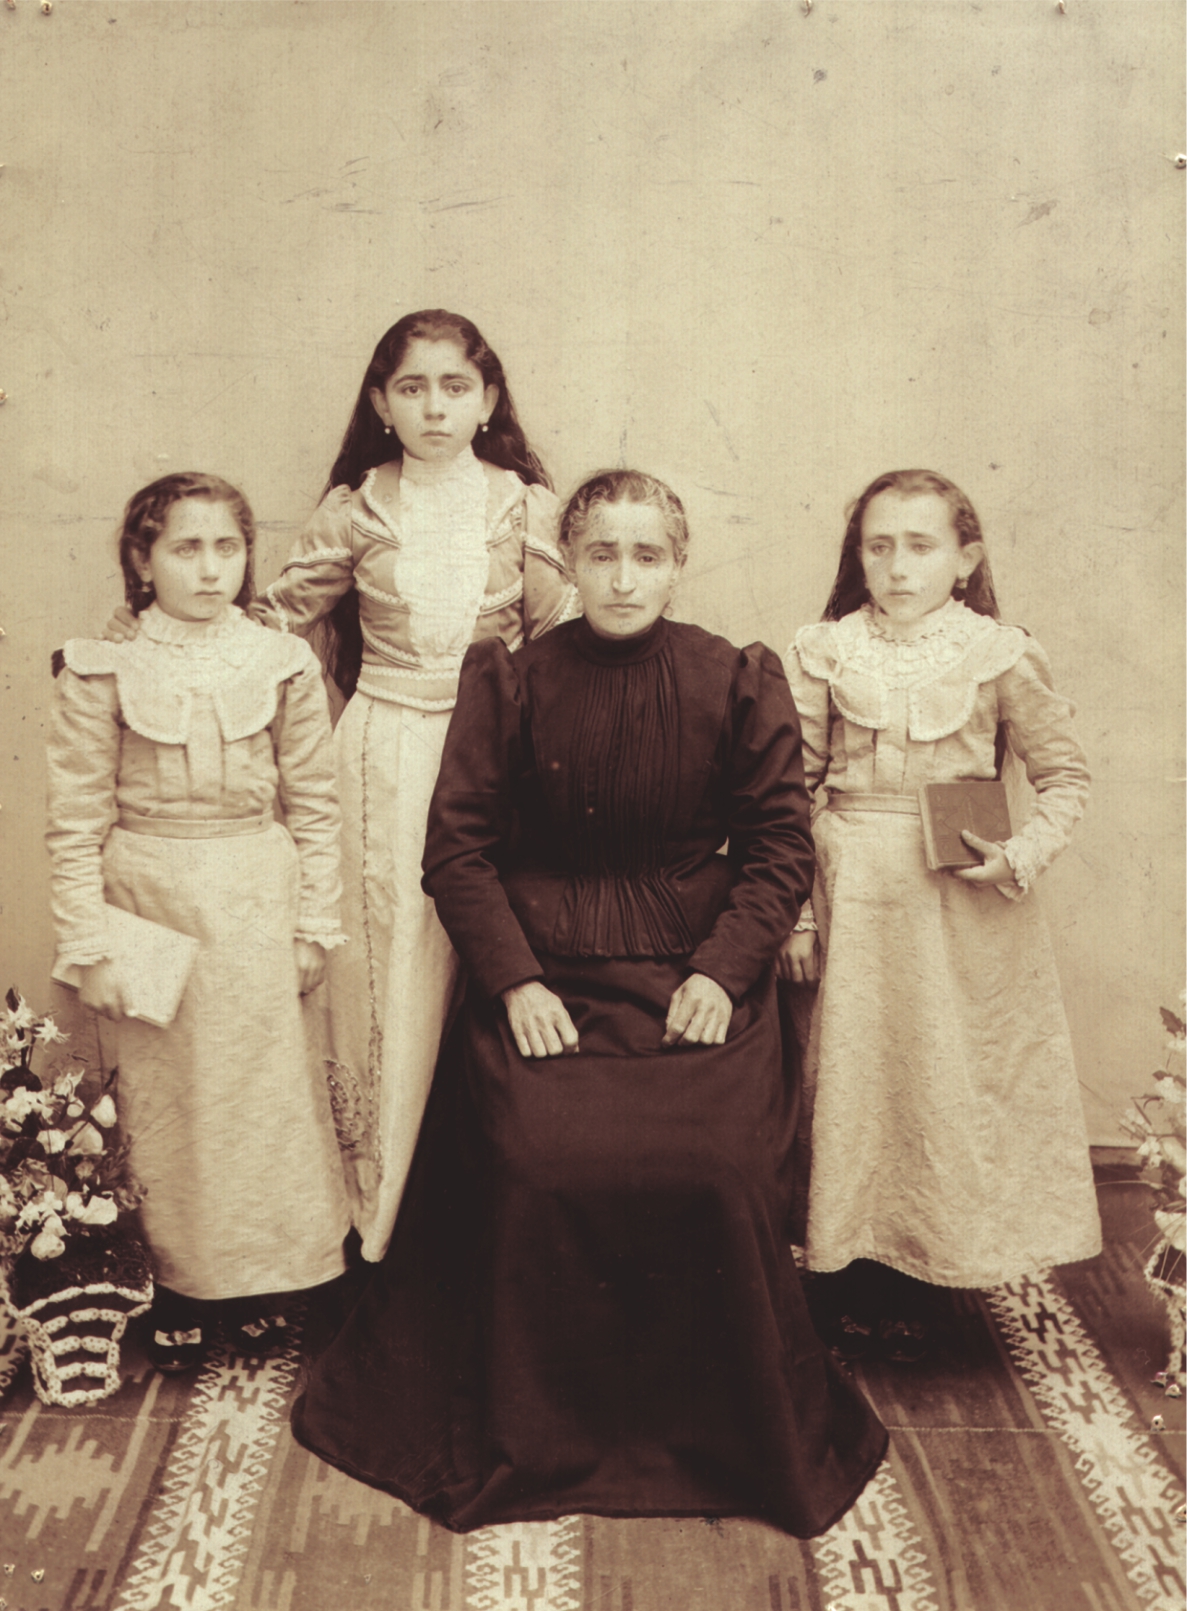 Տիկին Մաքրուհի Մնդիկեան (կենտրոնում) եւ դուստրերը՝ Հրանոյշ, Շահնար, Հայկանոյշ։ Կեսարիա, 1899 թ.։